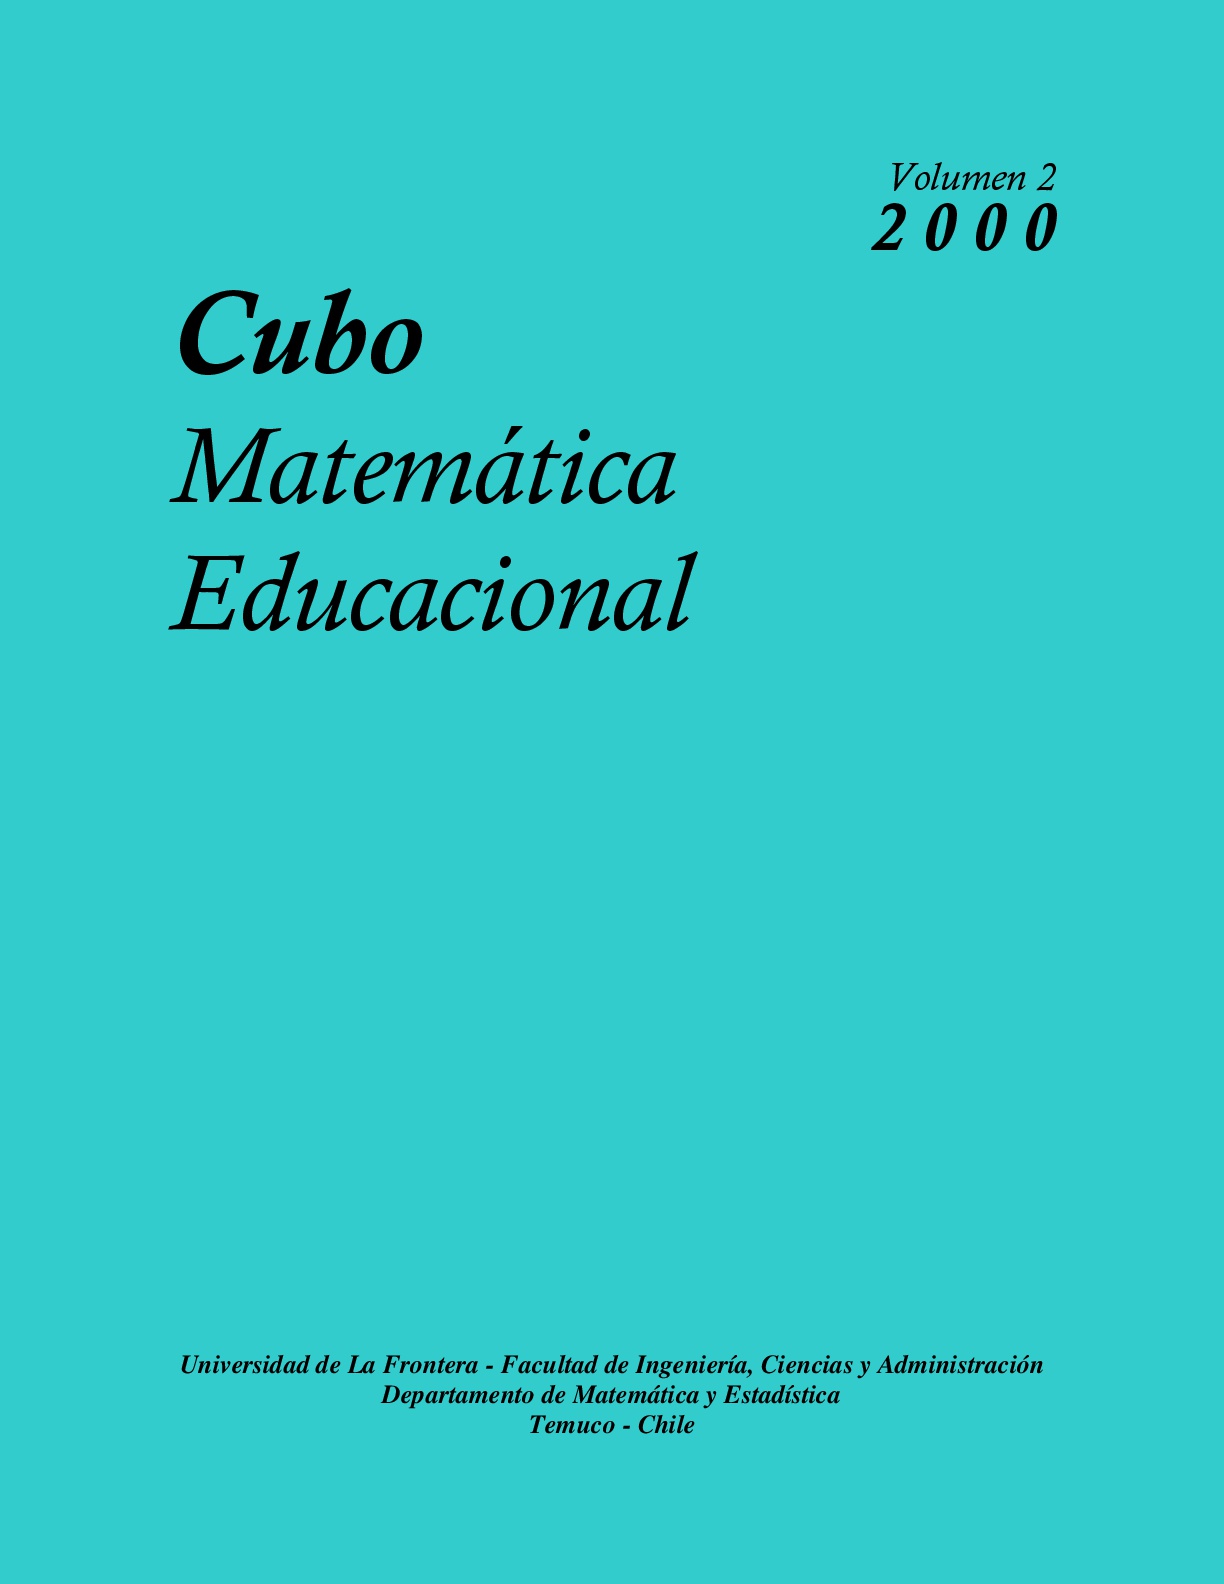 					View Vol. 2 No. 1 (2000): CUBO, Matemática Educacional
				